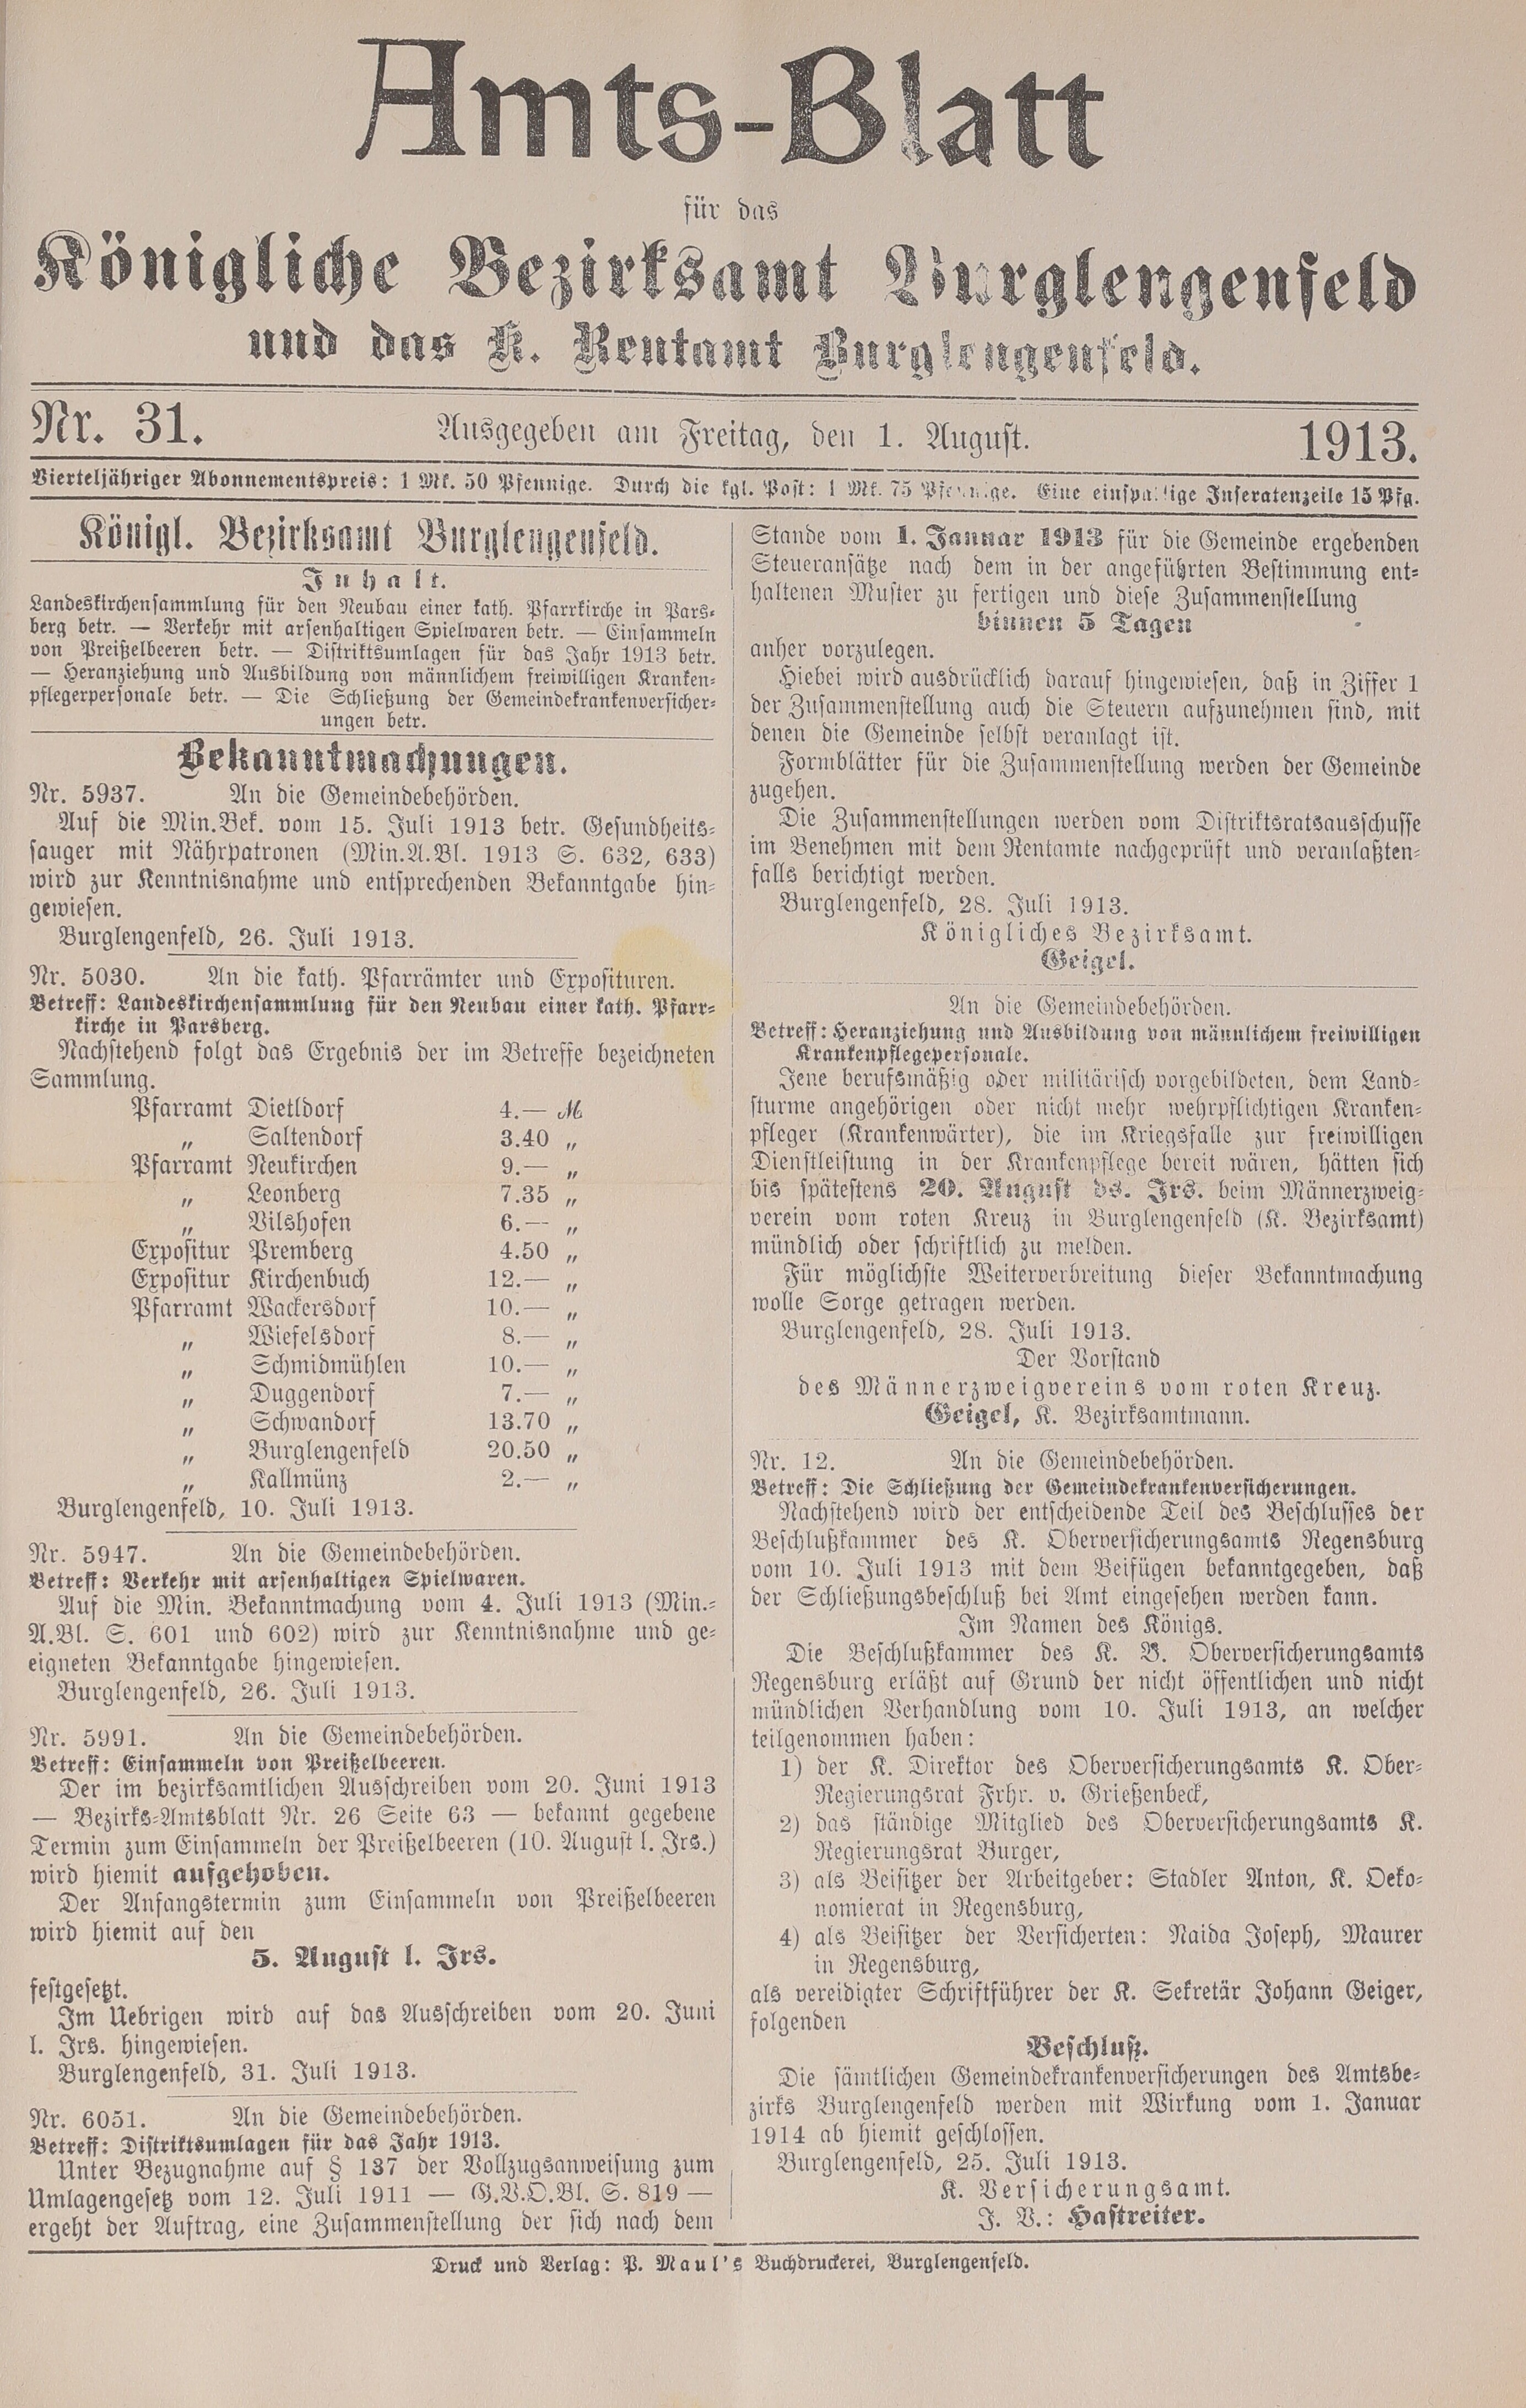 1. amtsblatt-burglengenfeld-1913-08-01-n31_3270